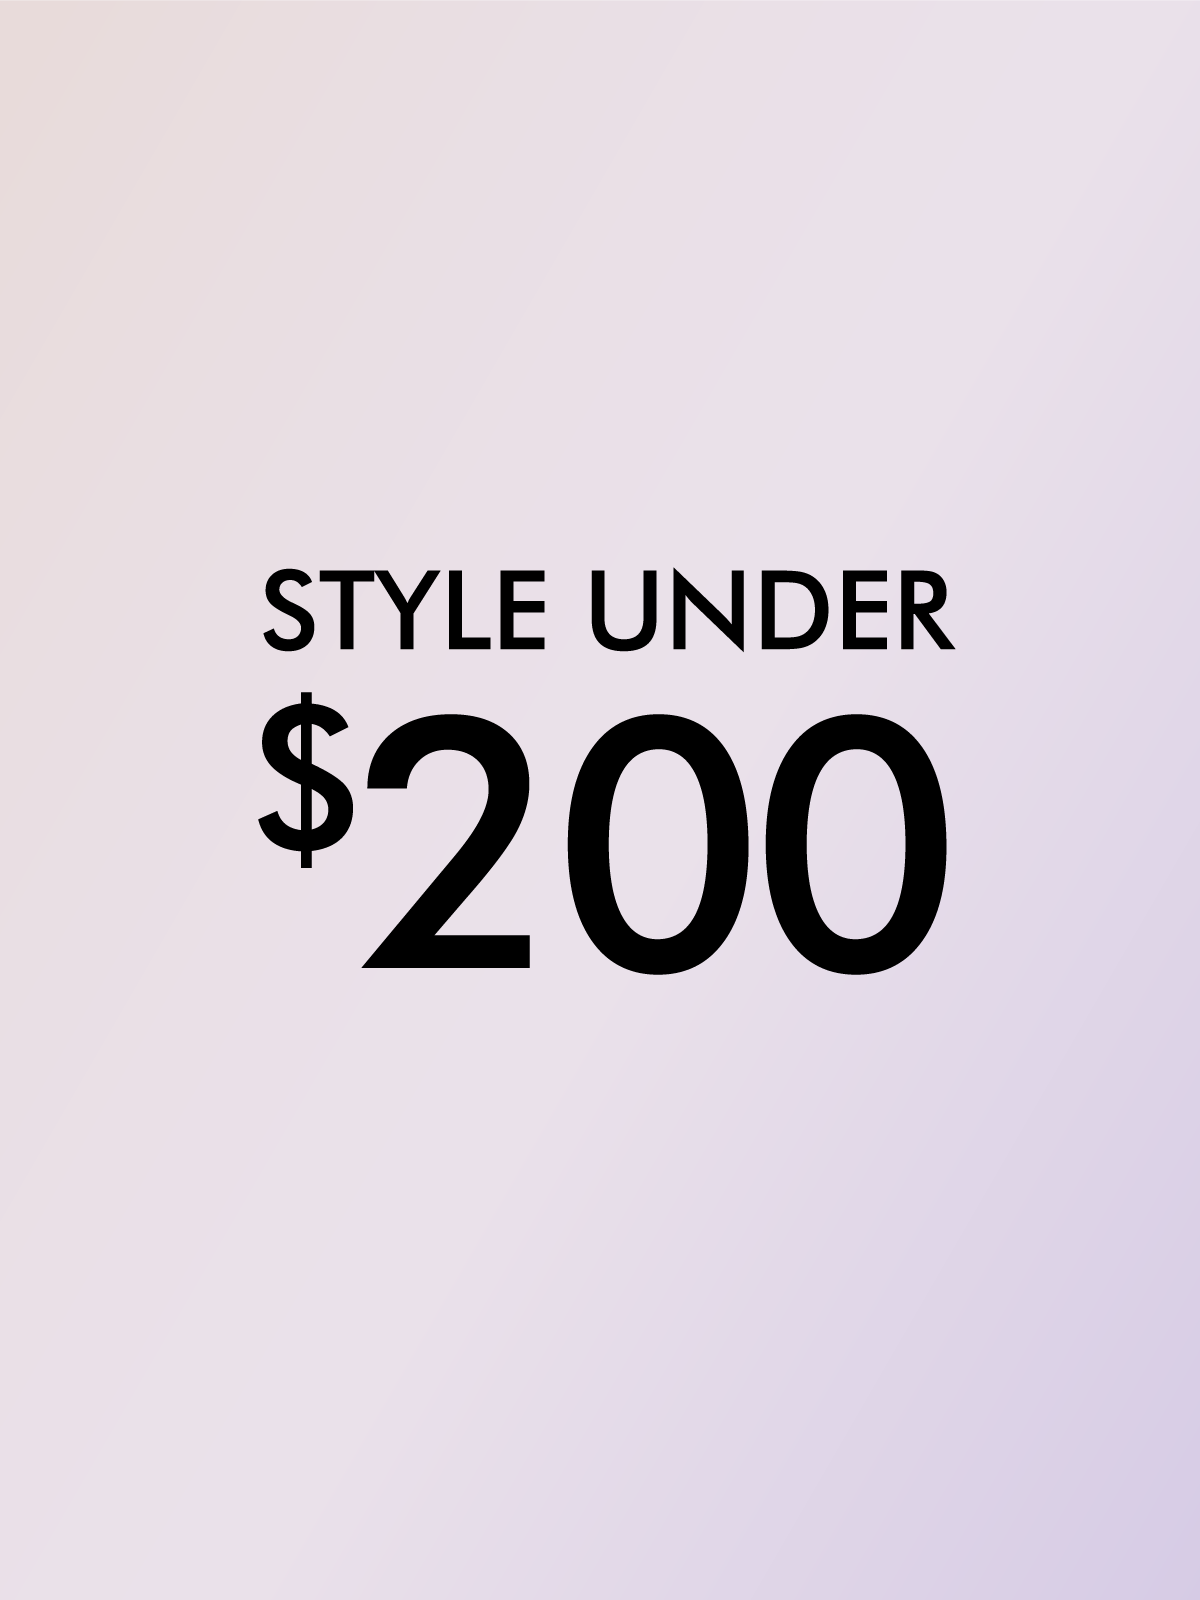 STYLES UNDER $200